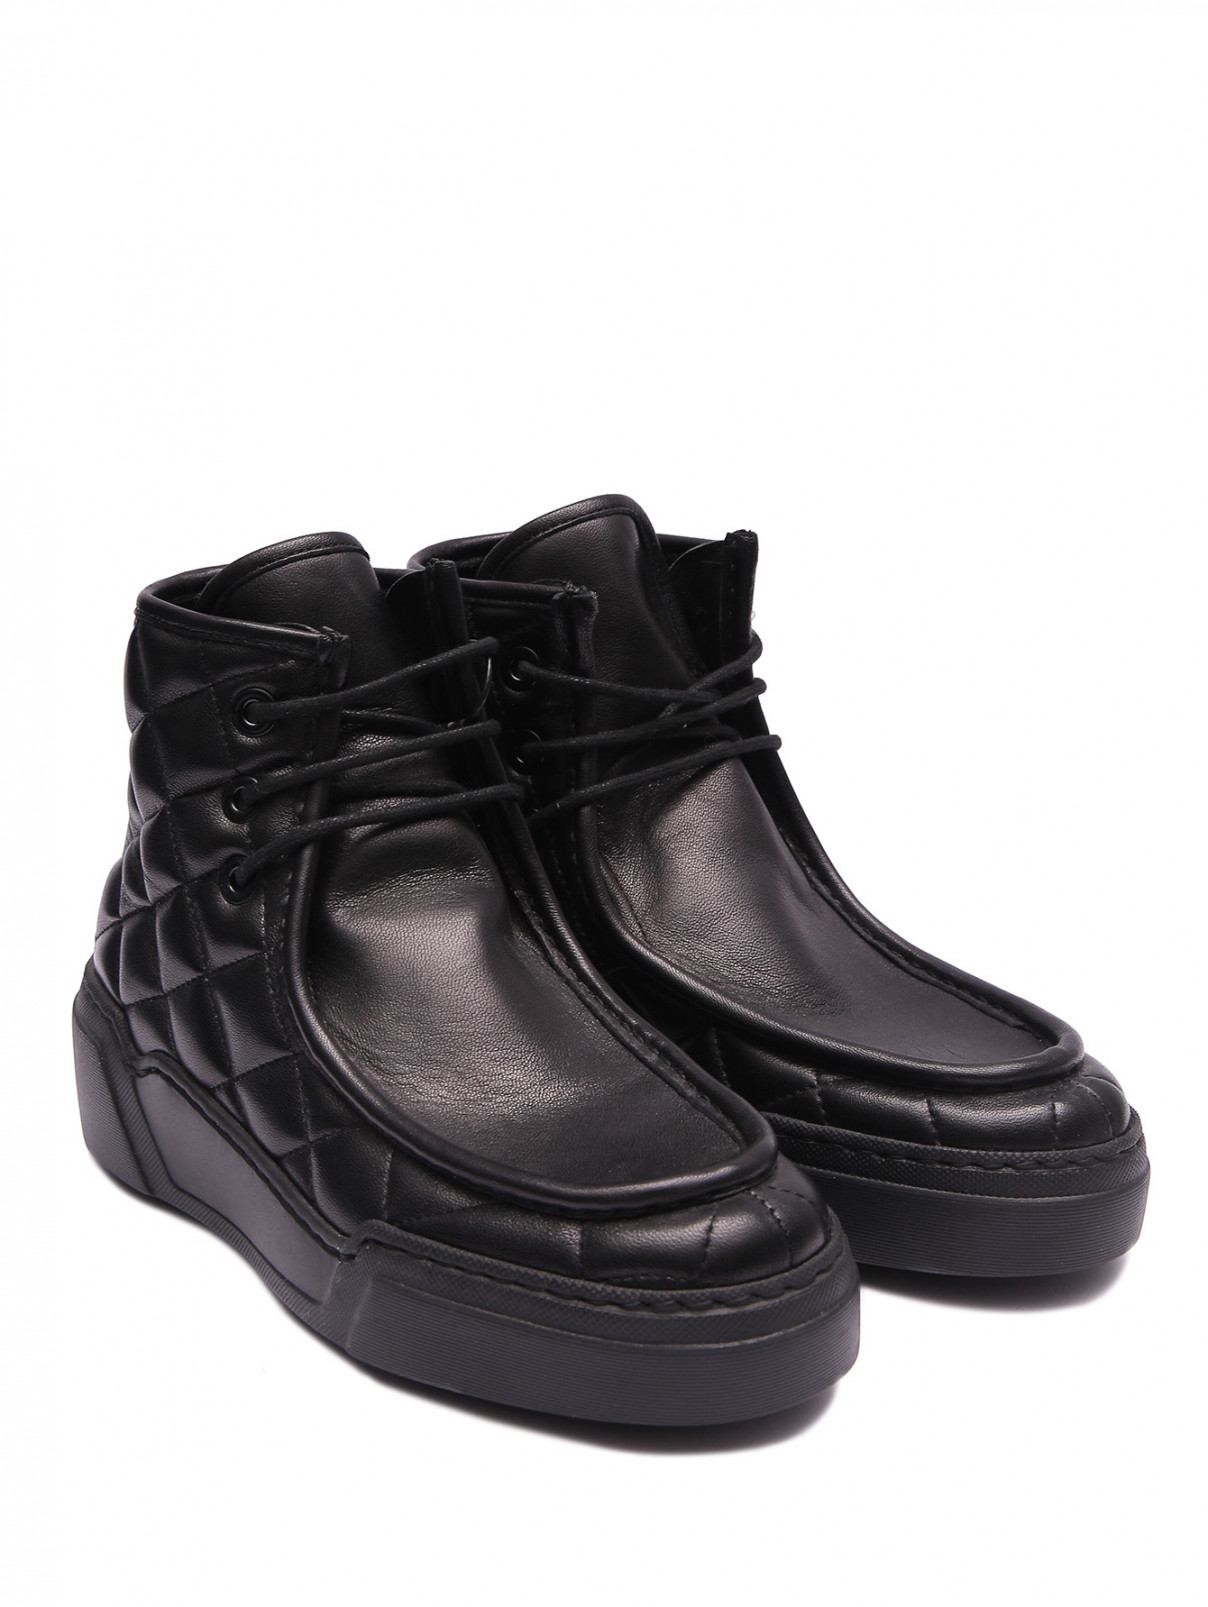 Стеганые ботинки из кожи Antonio Marras  –  Общий вид  – Цвет:  Черный